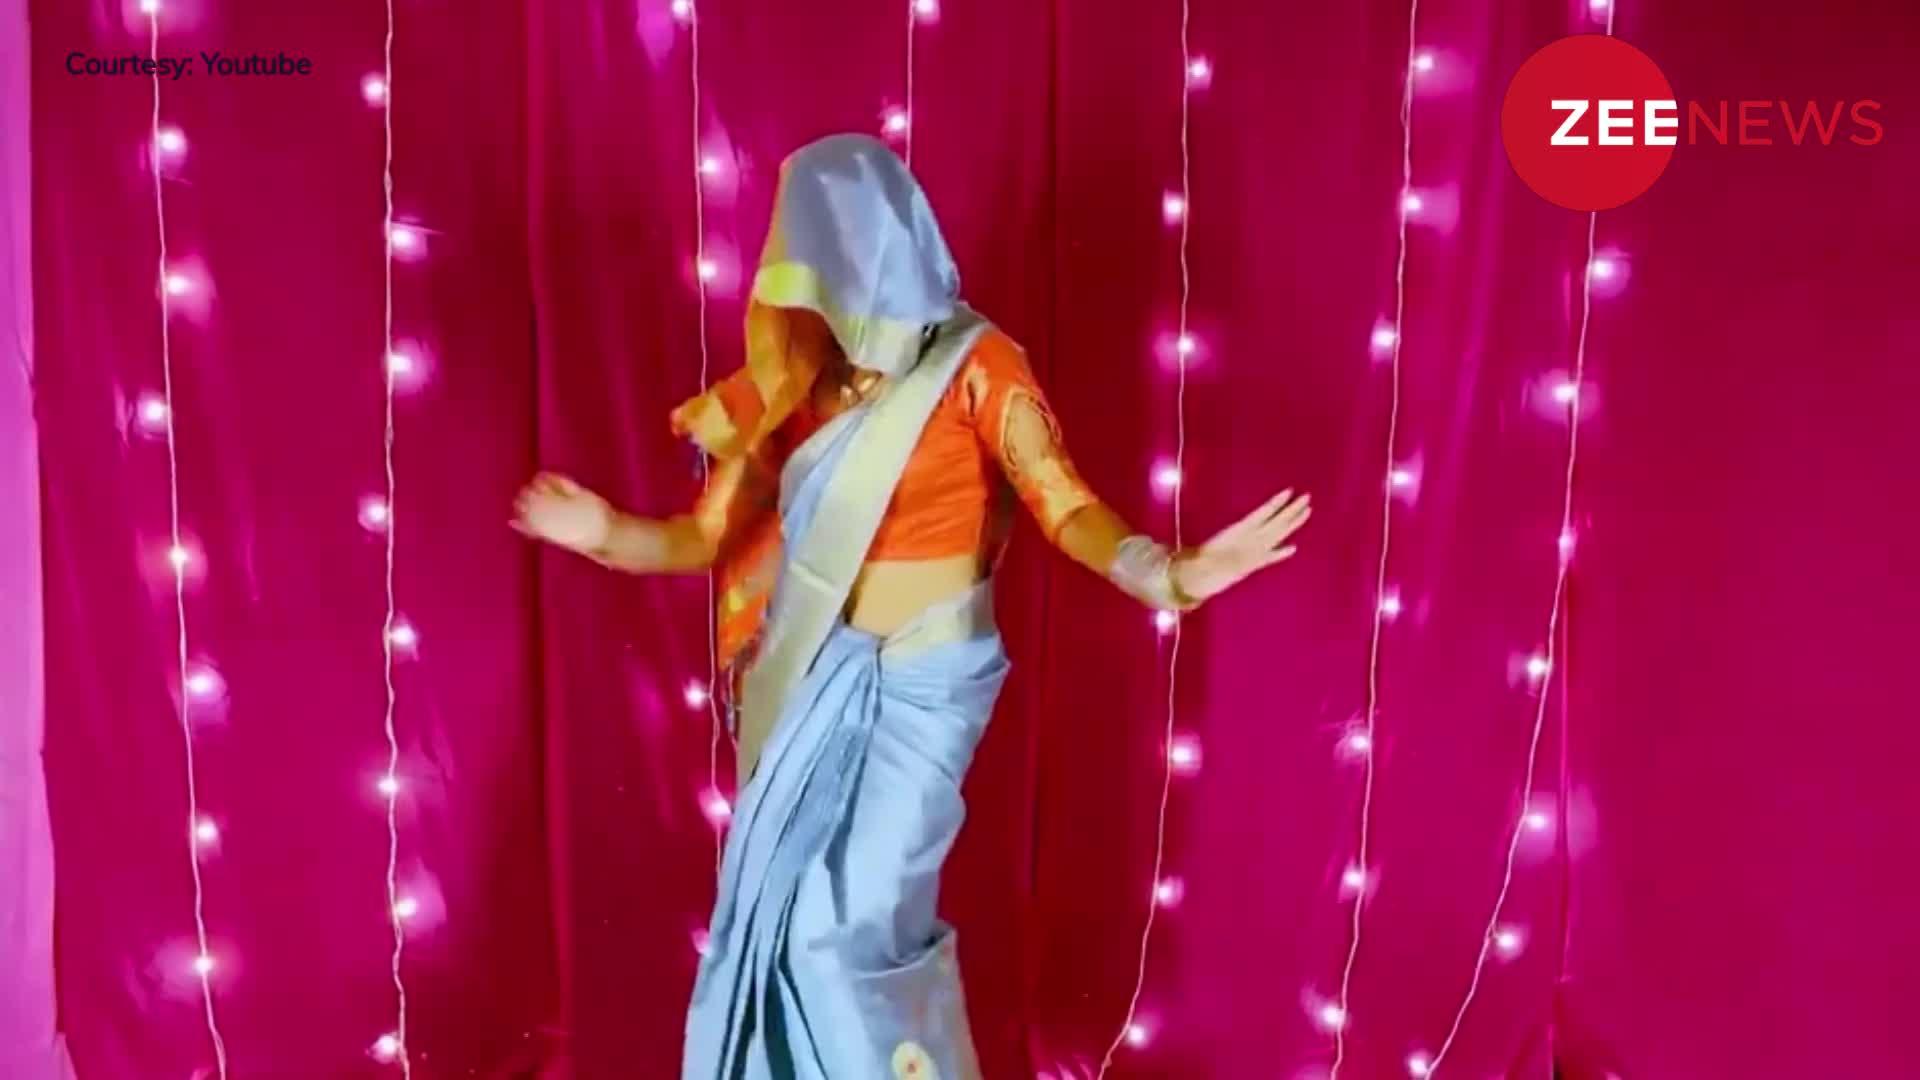 Desi Bhabhi Dance: सिर पर घूंघट डाल सपना चौधरी के गाने पर देसी भाभी ने दिखाए बोल्ड डांस मूव्स, एक-एक ठुमके पर हिल गया सारा हरियाणा